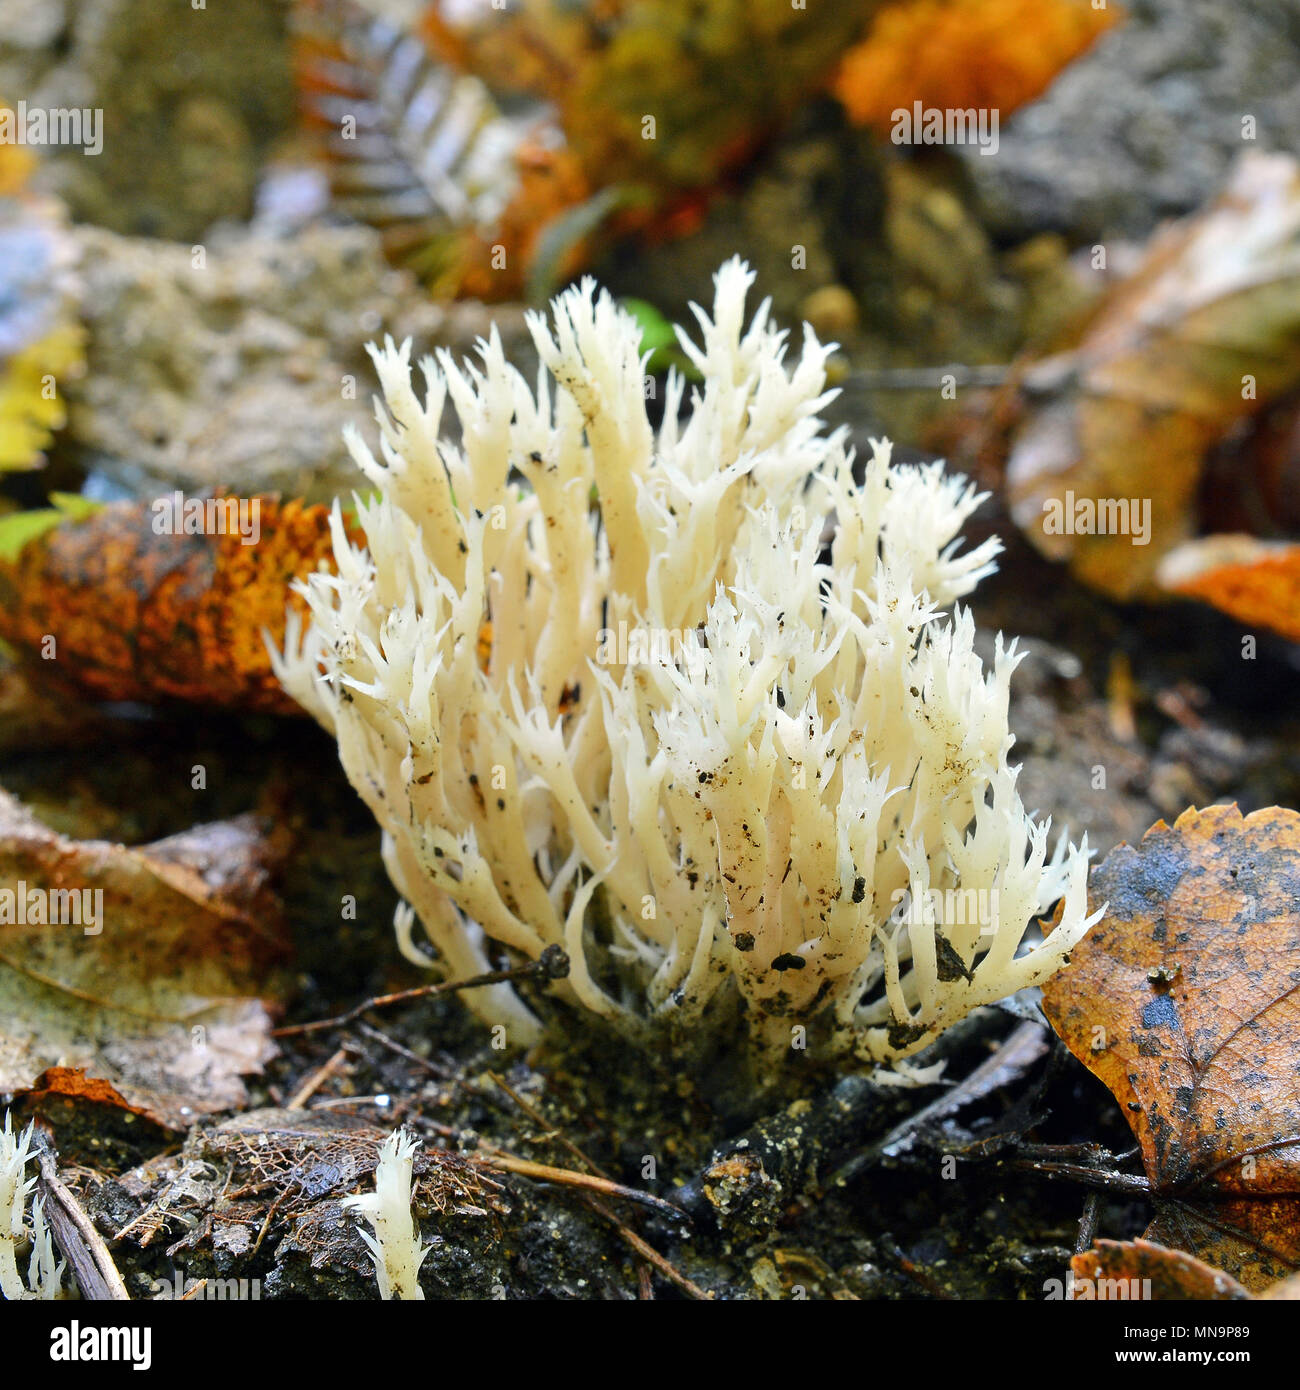 Clavulina cristata Pilz, wie die weiße Koralle Die Koralle Pilz Pilz oder Crested bekannt Stockfoto